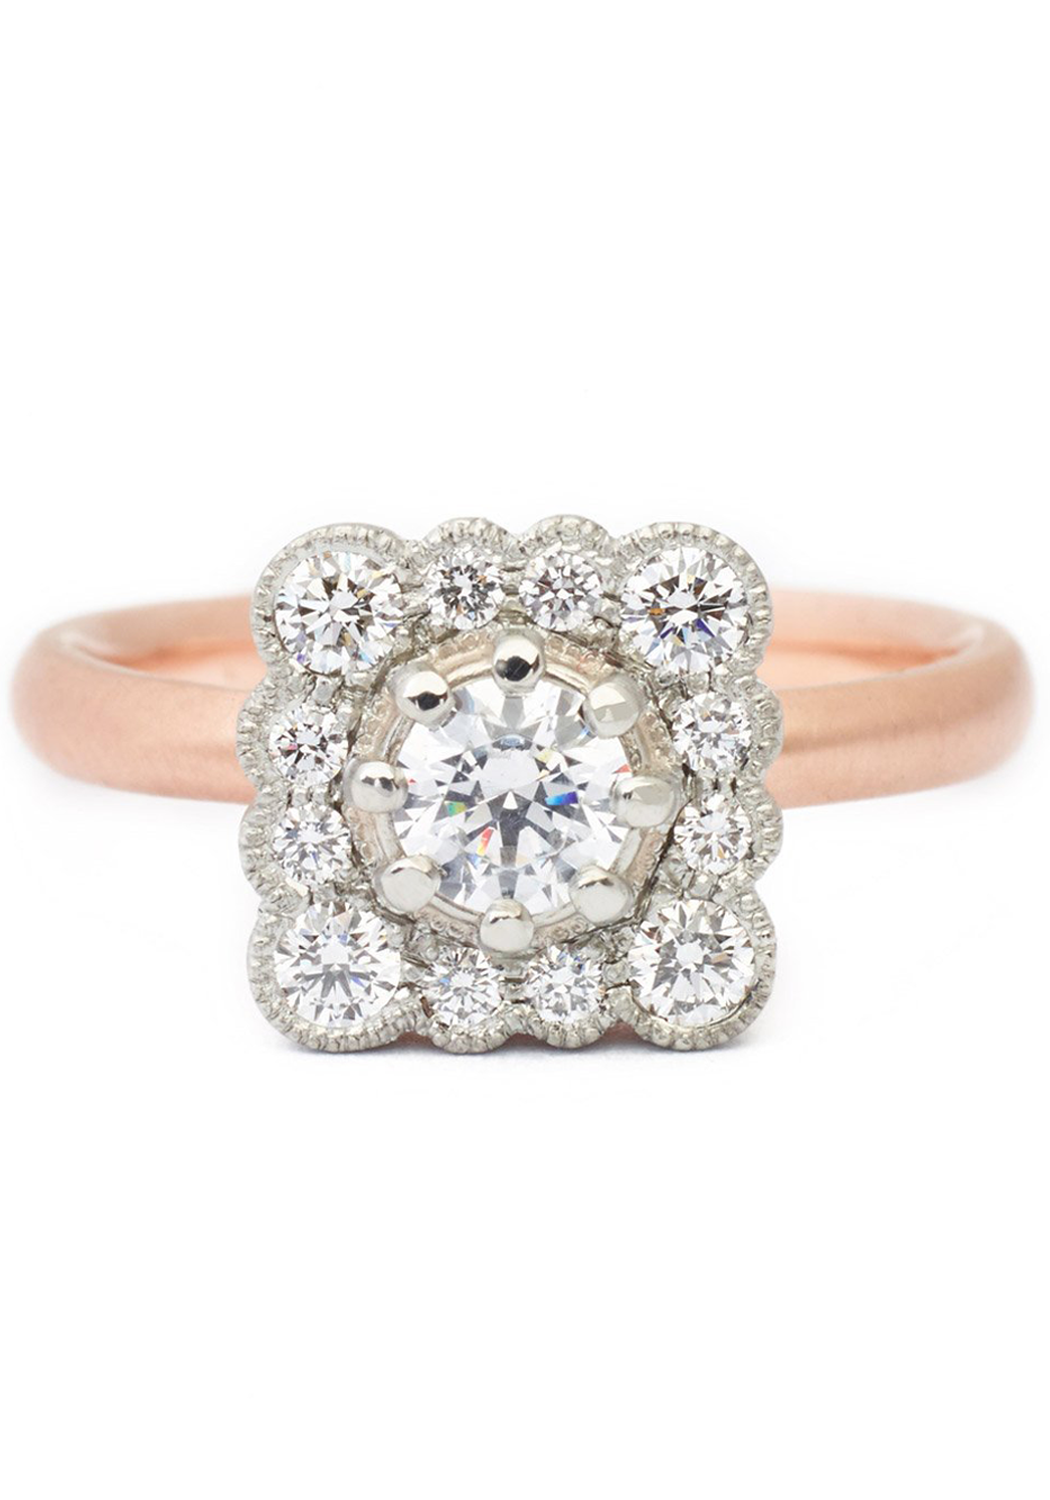 Anne Sportun Lauren Scalloped Square Halo Diamond Ring — Oster